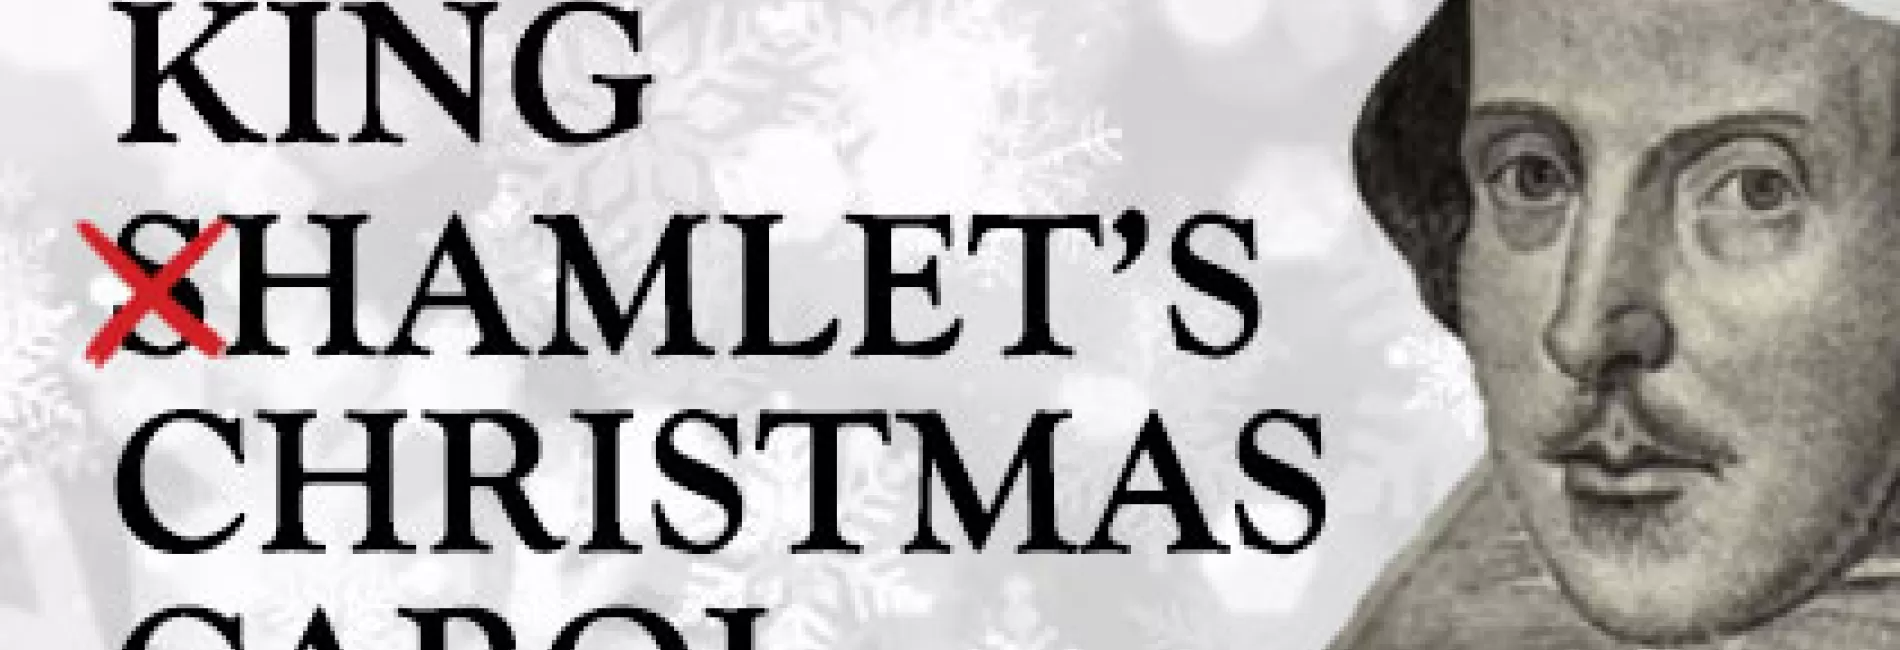 King Hamlet's Christmas Carol